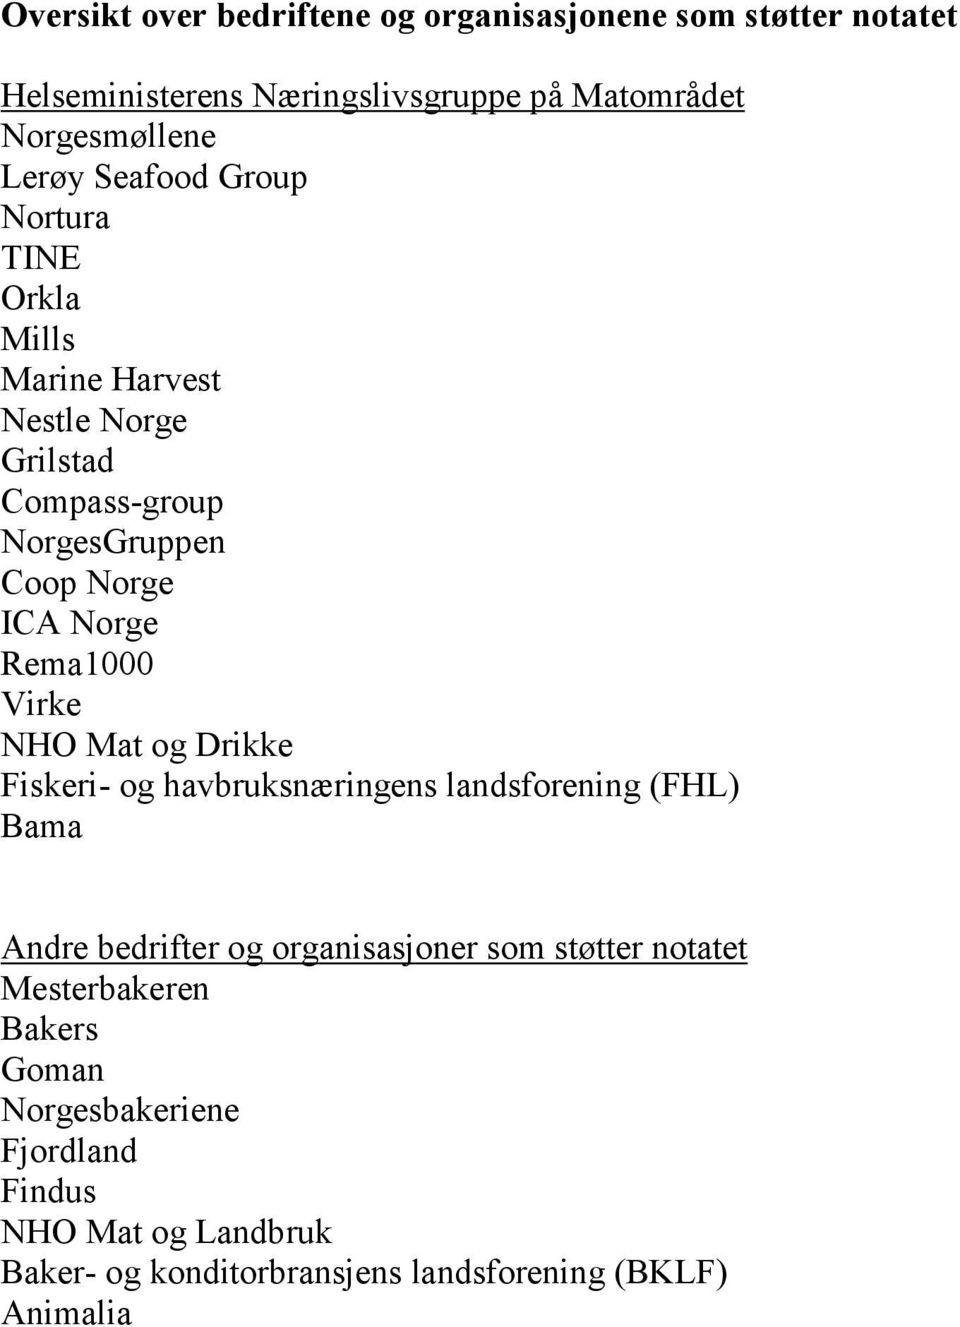 Virke NHO Mat og Drikke Fiskeri- og havbruksnæringens landsforening (FHL) Bama Andre bedrifter og organisasjoner som støtter notatet